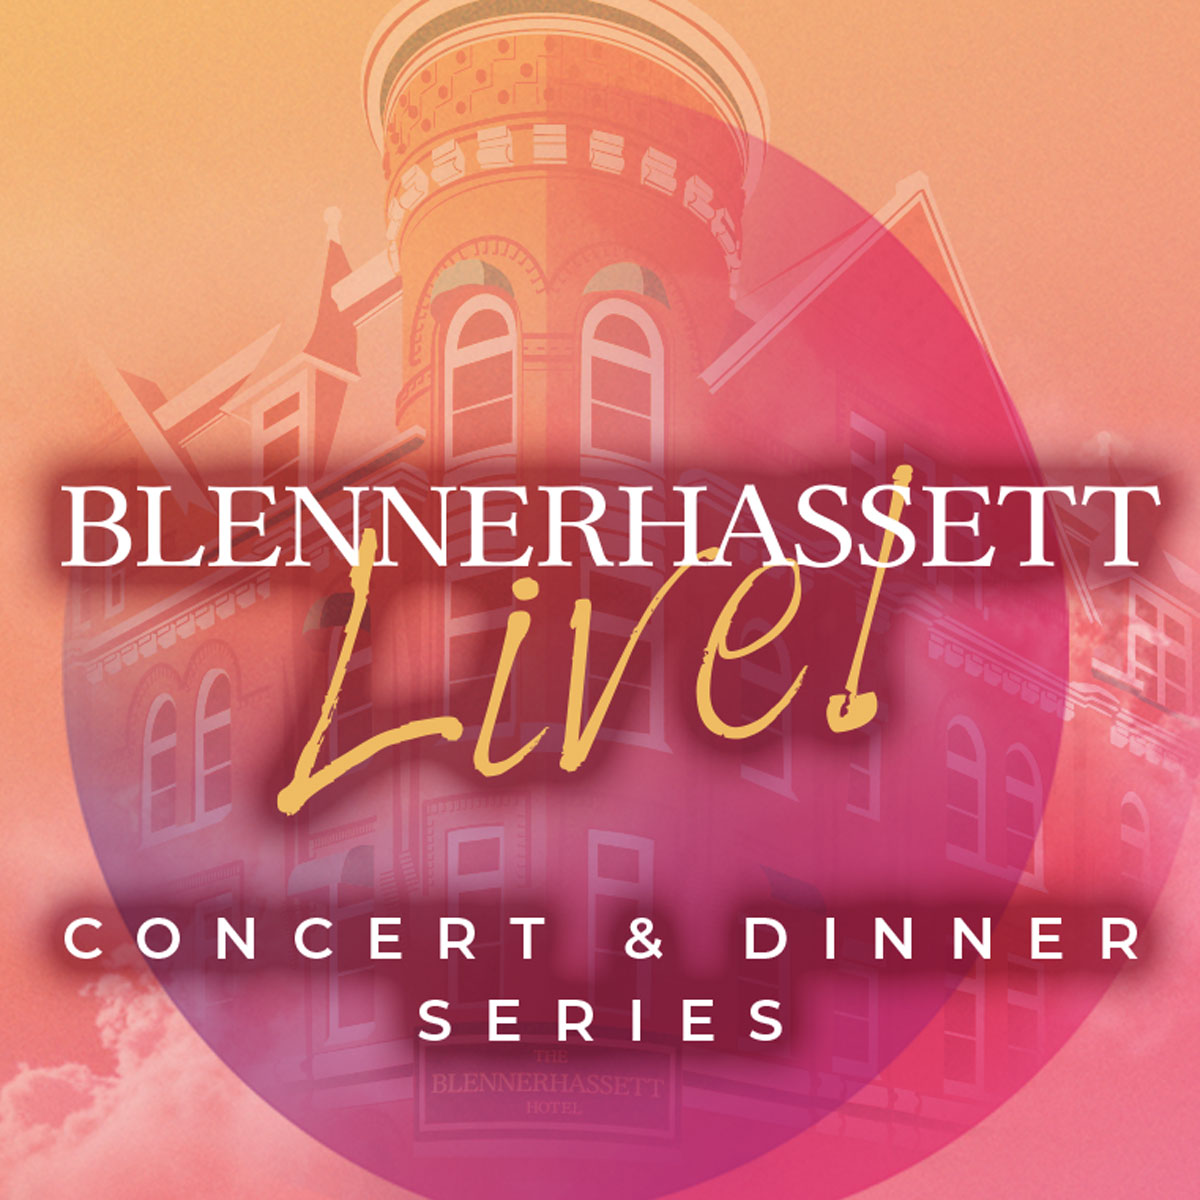 Blennerhassett Live! Concert and Dinner Series